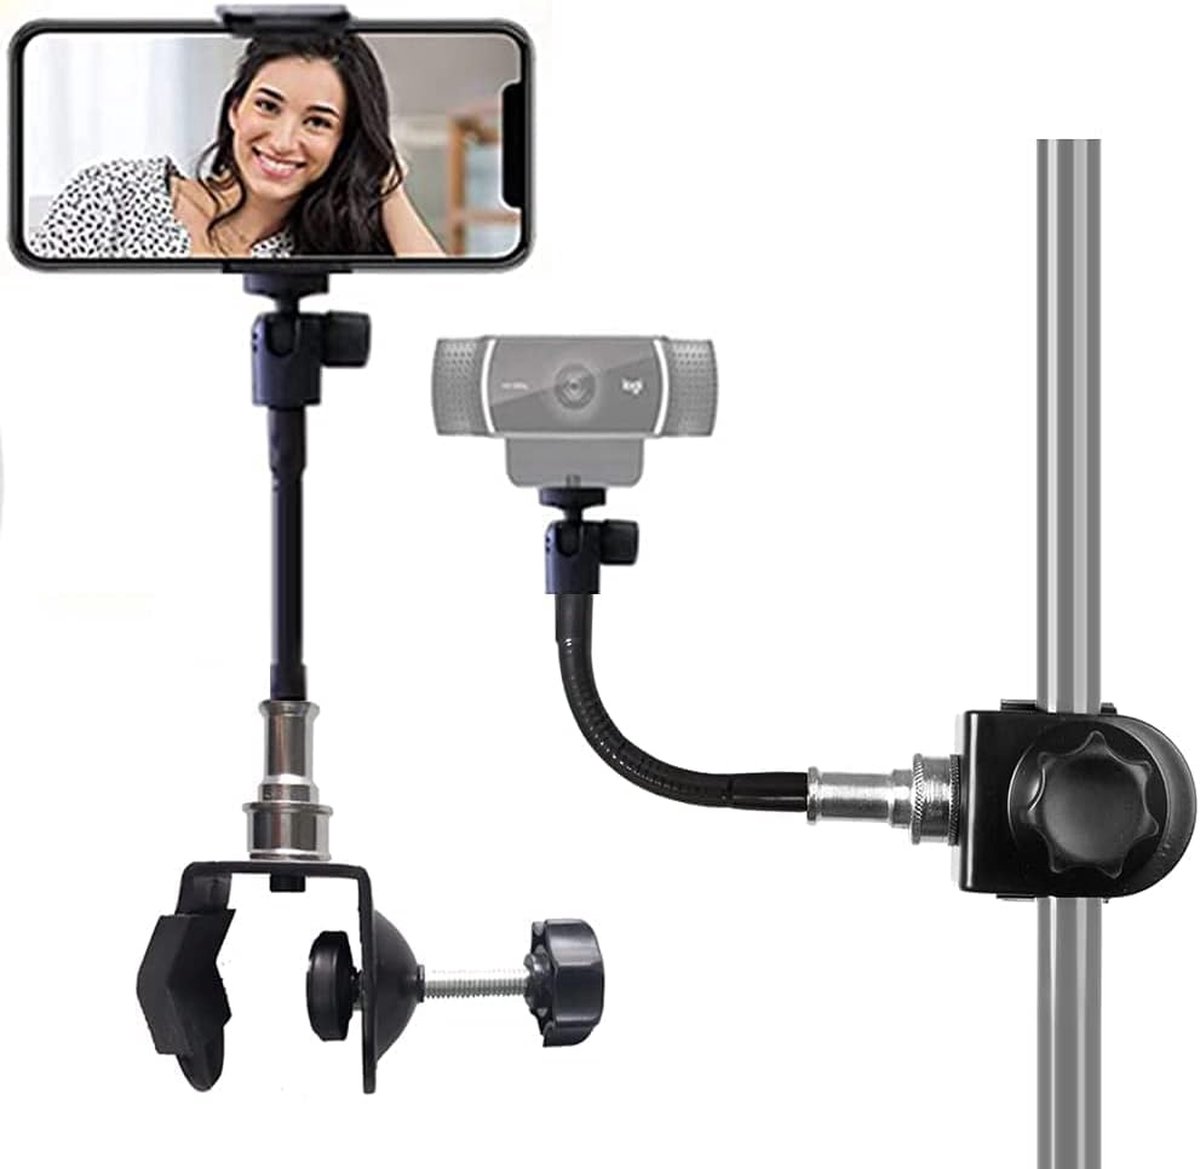 Mini-Groove Neck Super Clamp Mount Webcam standaard telefoonhouder camerahouder Muziekstandaardhouder voor mobiele telefoons, Logitech Webcam C920 C930, LED-verlichting, flitser enz. (1/4 inch schroefdraad) - Etucro